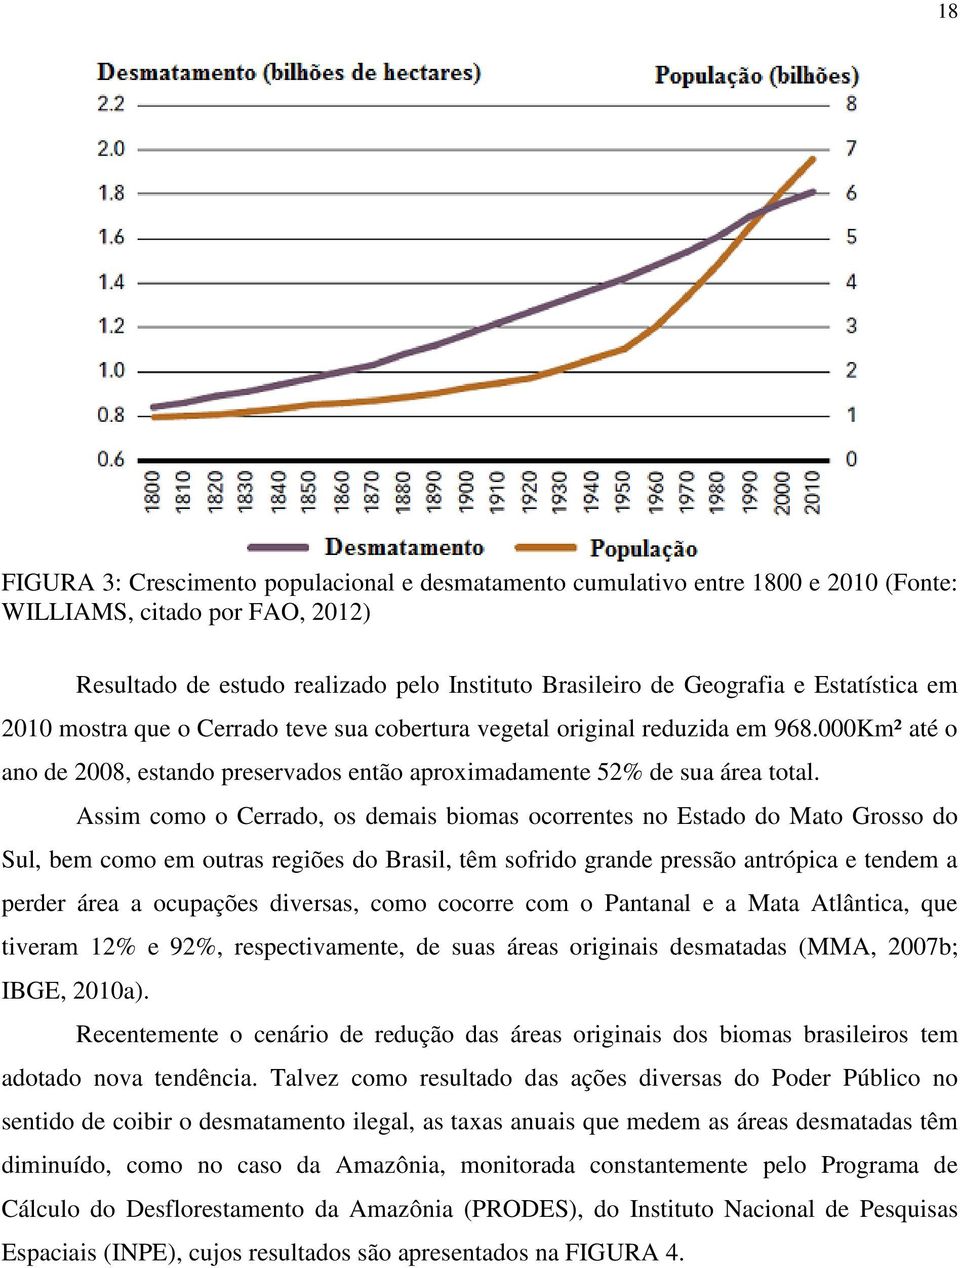 Assim como o Cerrado, os demais biomas ocorrentes no Estado do Mato Grosso do Sul, bem como em outras regiões do Brasil, têm sofrido grande pressão antrópica e tendem a perder área a ocupações